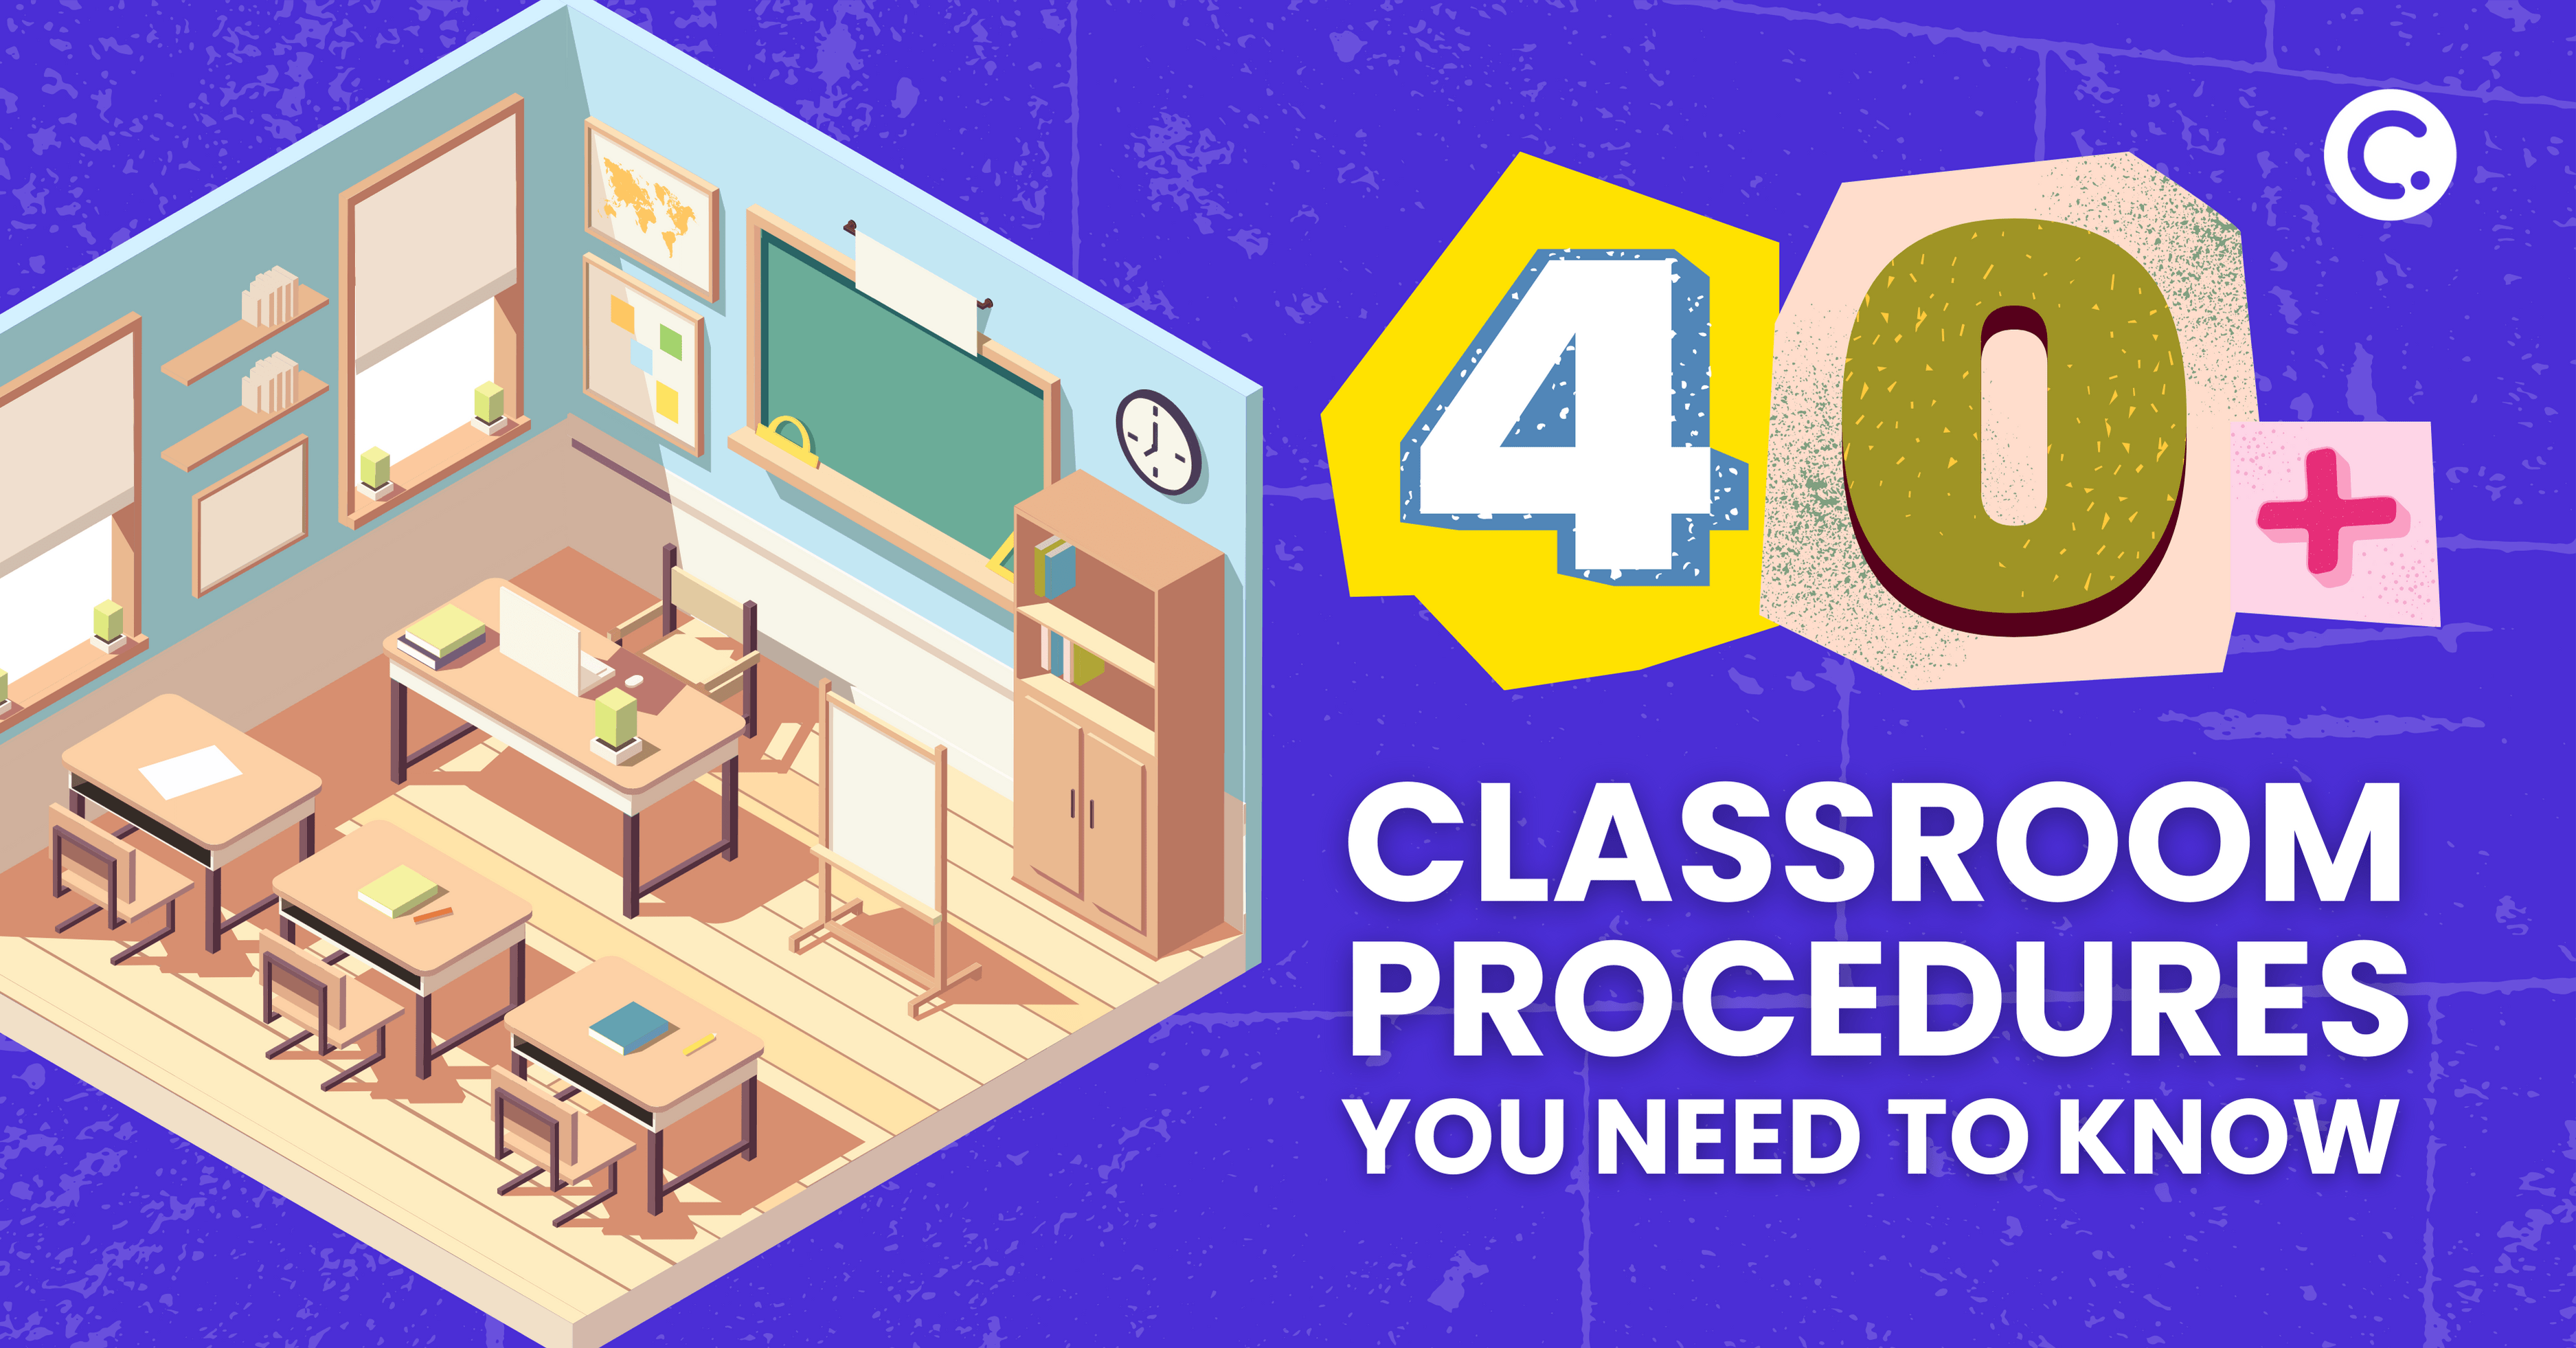 Más de 40 procedimientos de clase imprescindibles para todos los niveles de enseñanza